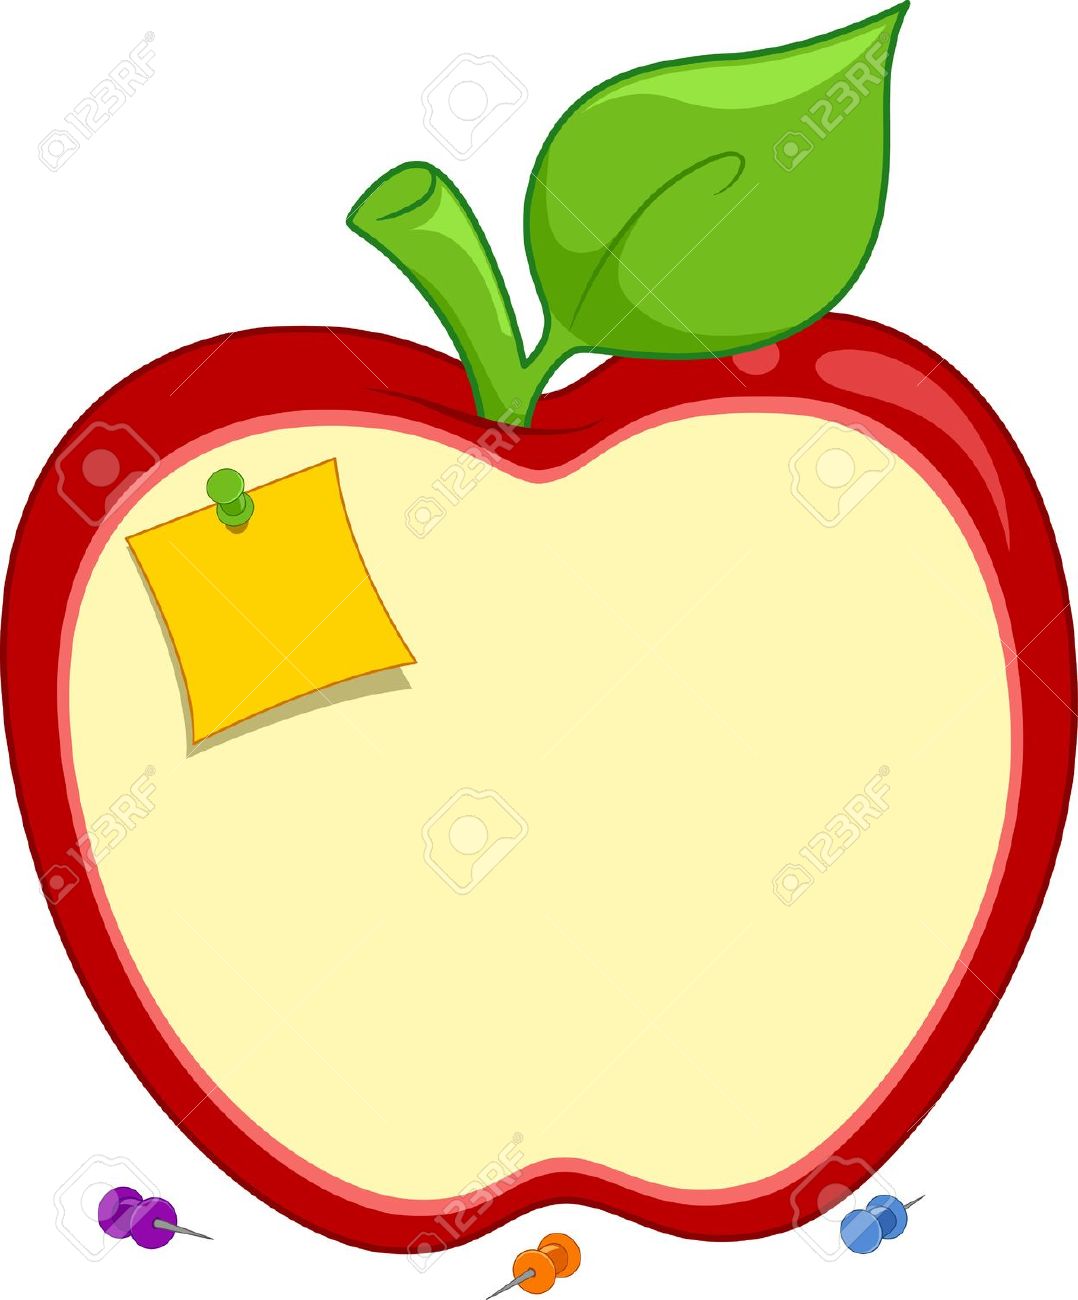 apple clipart frame